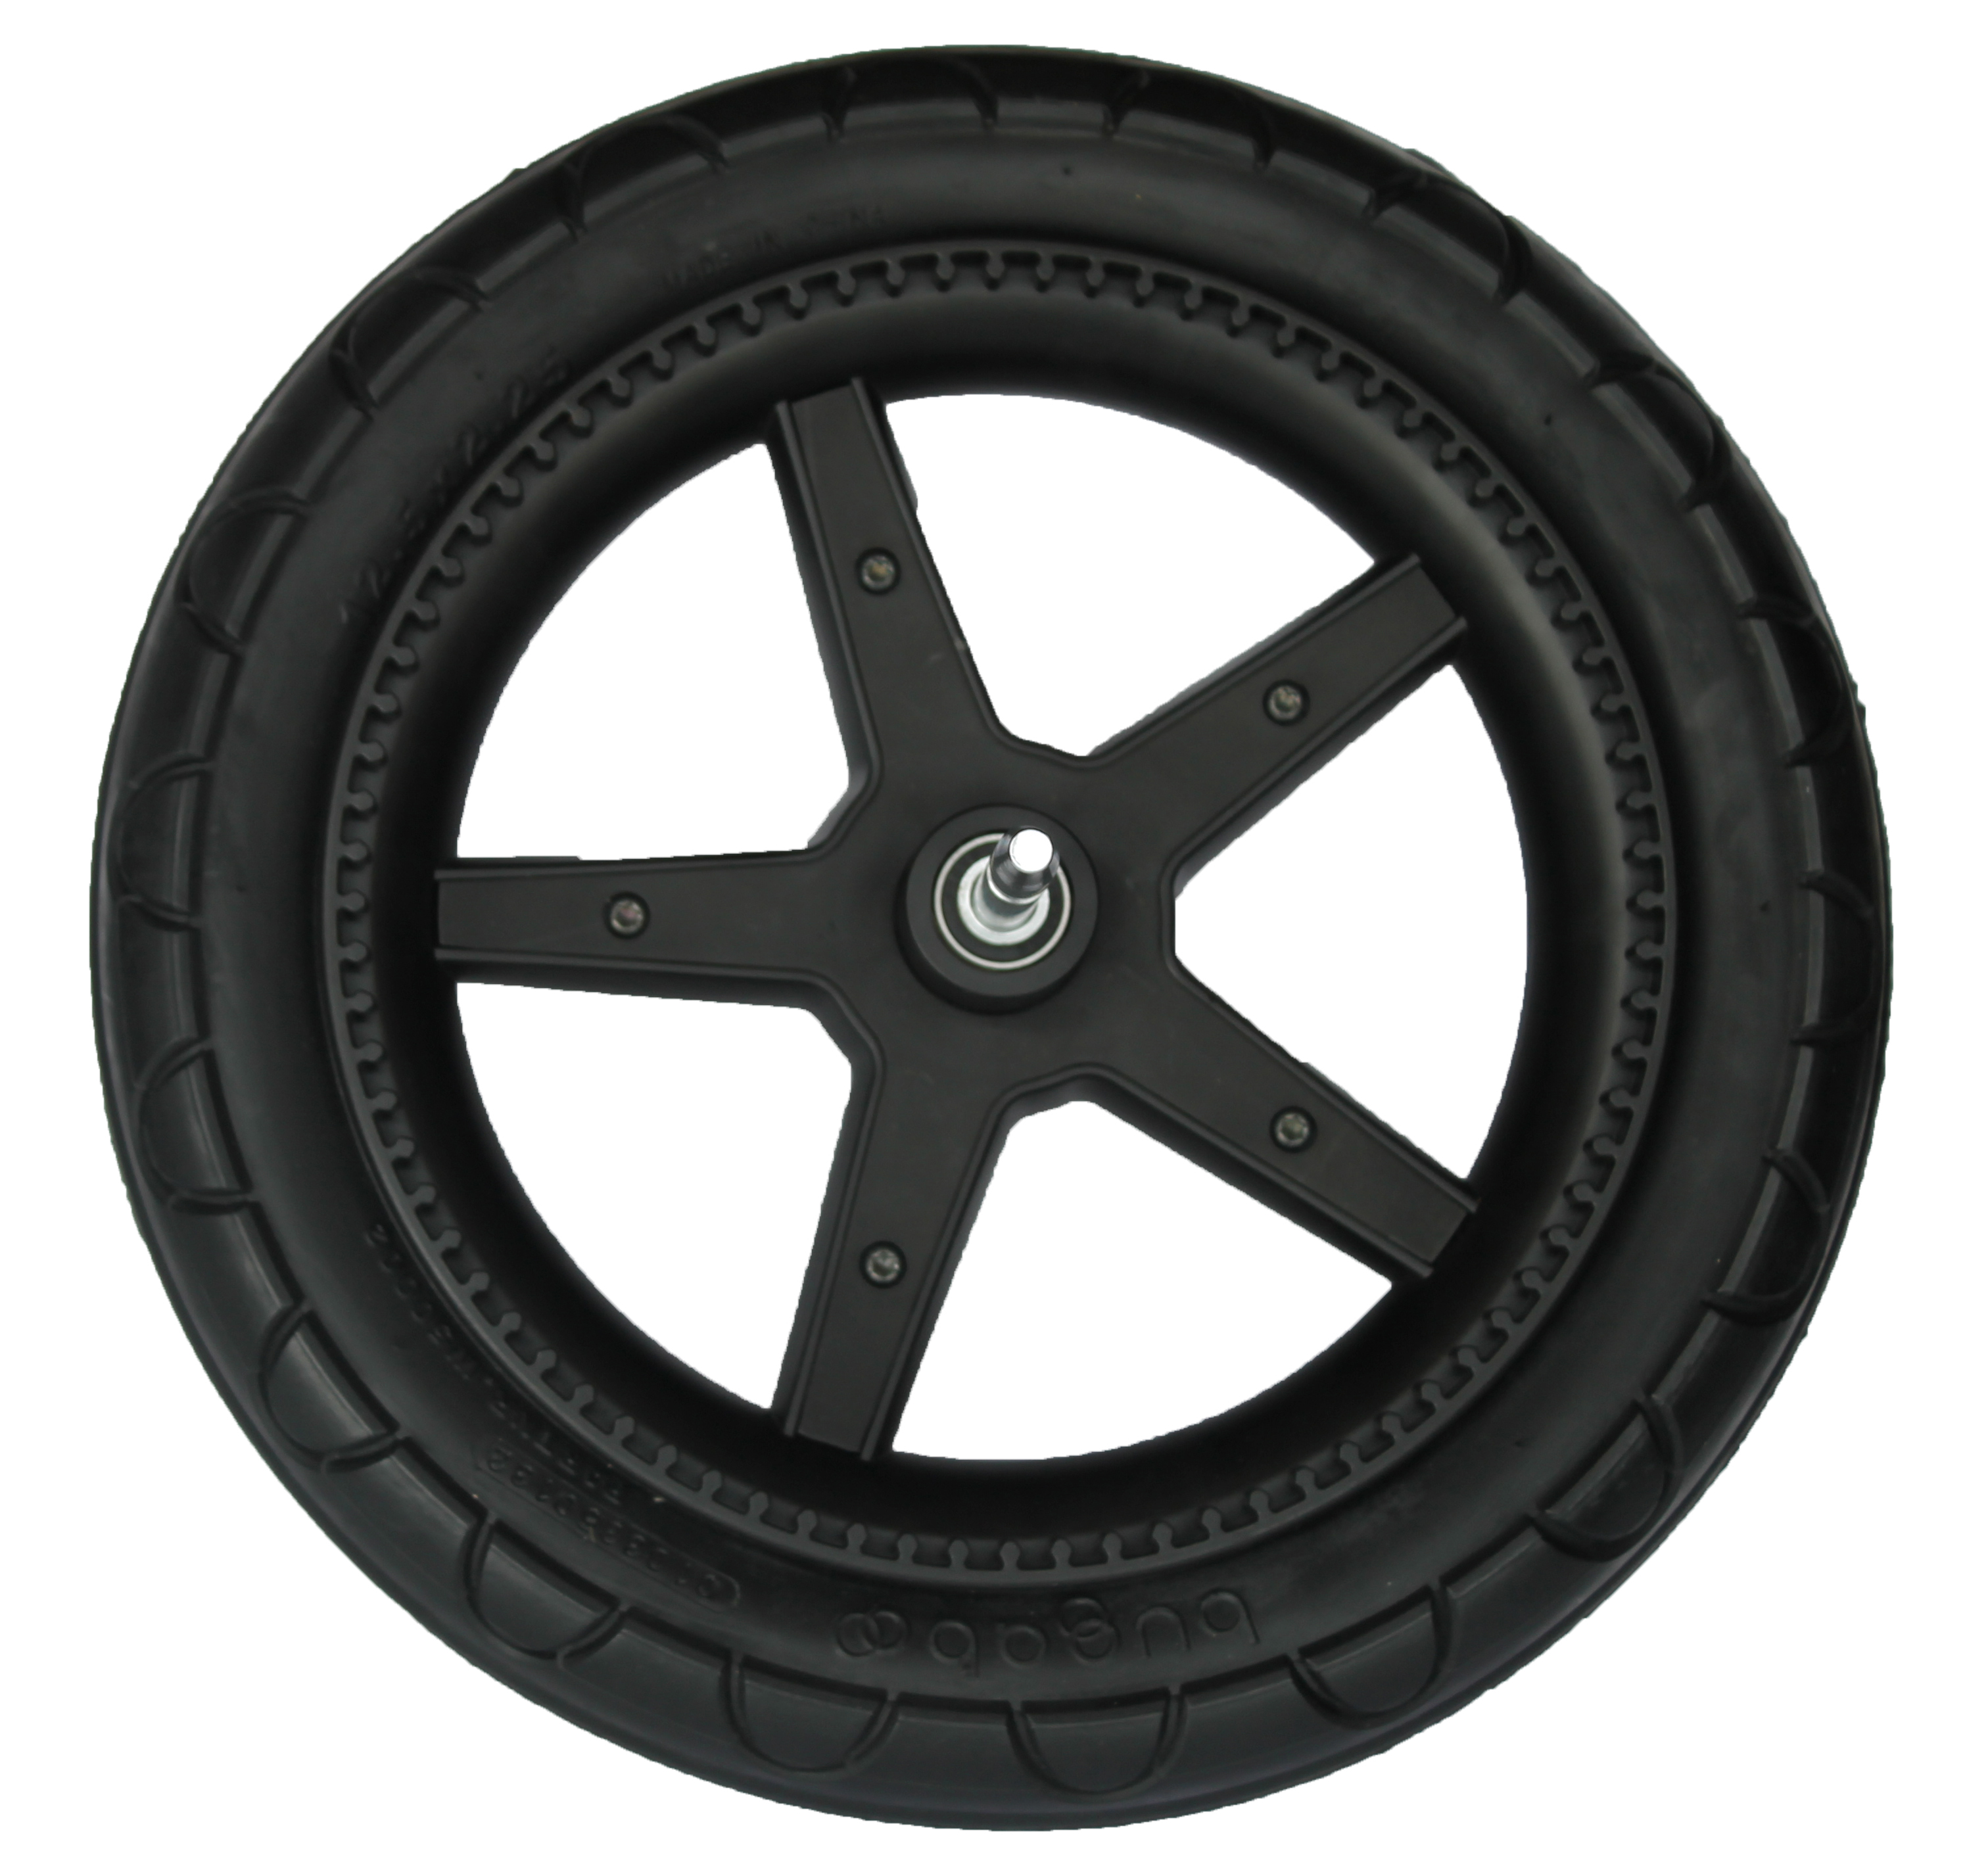 中国聚氨酯泡沫生产商泡沫填充轮胎的18英寸轮胎16寸轮毂最佳轮胎价格4×4的车轮和轮胎